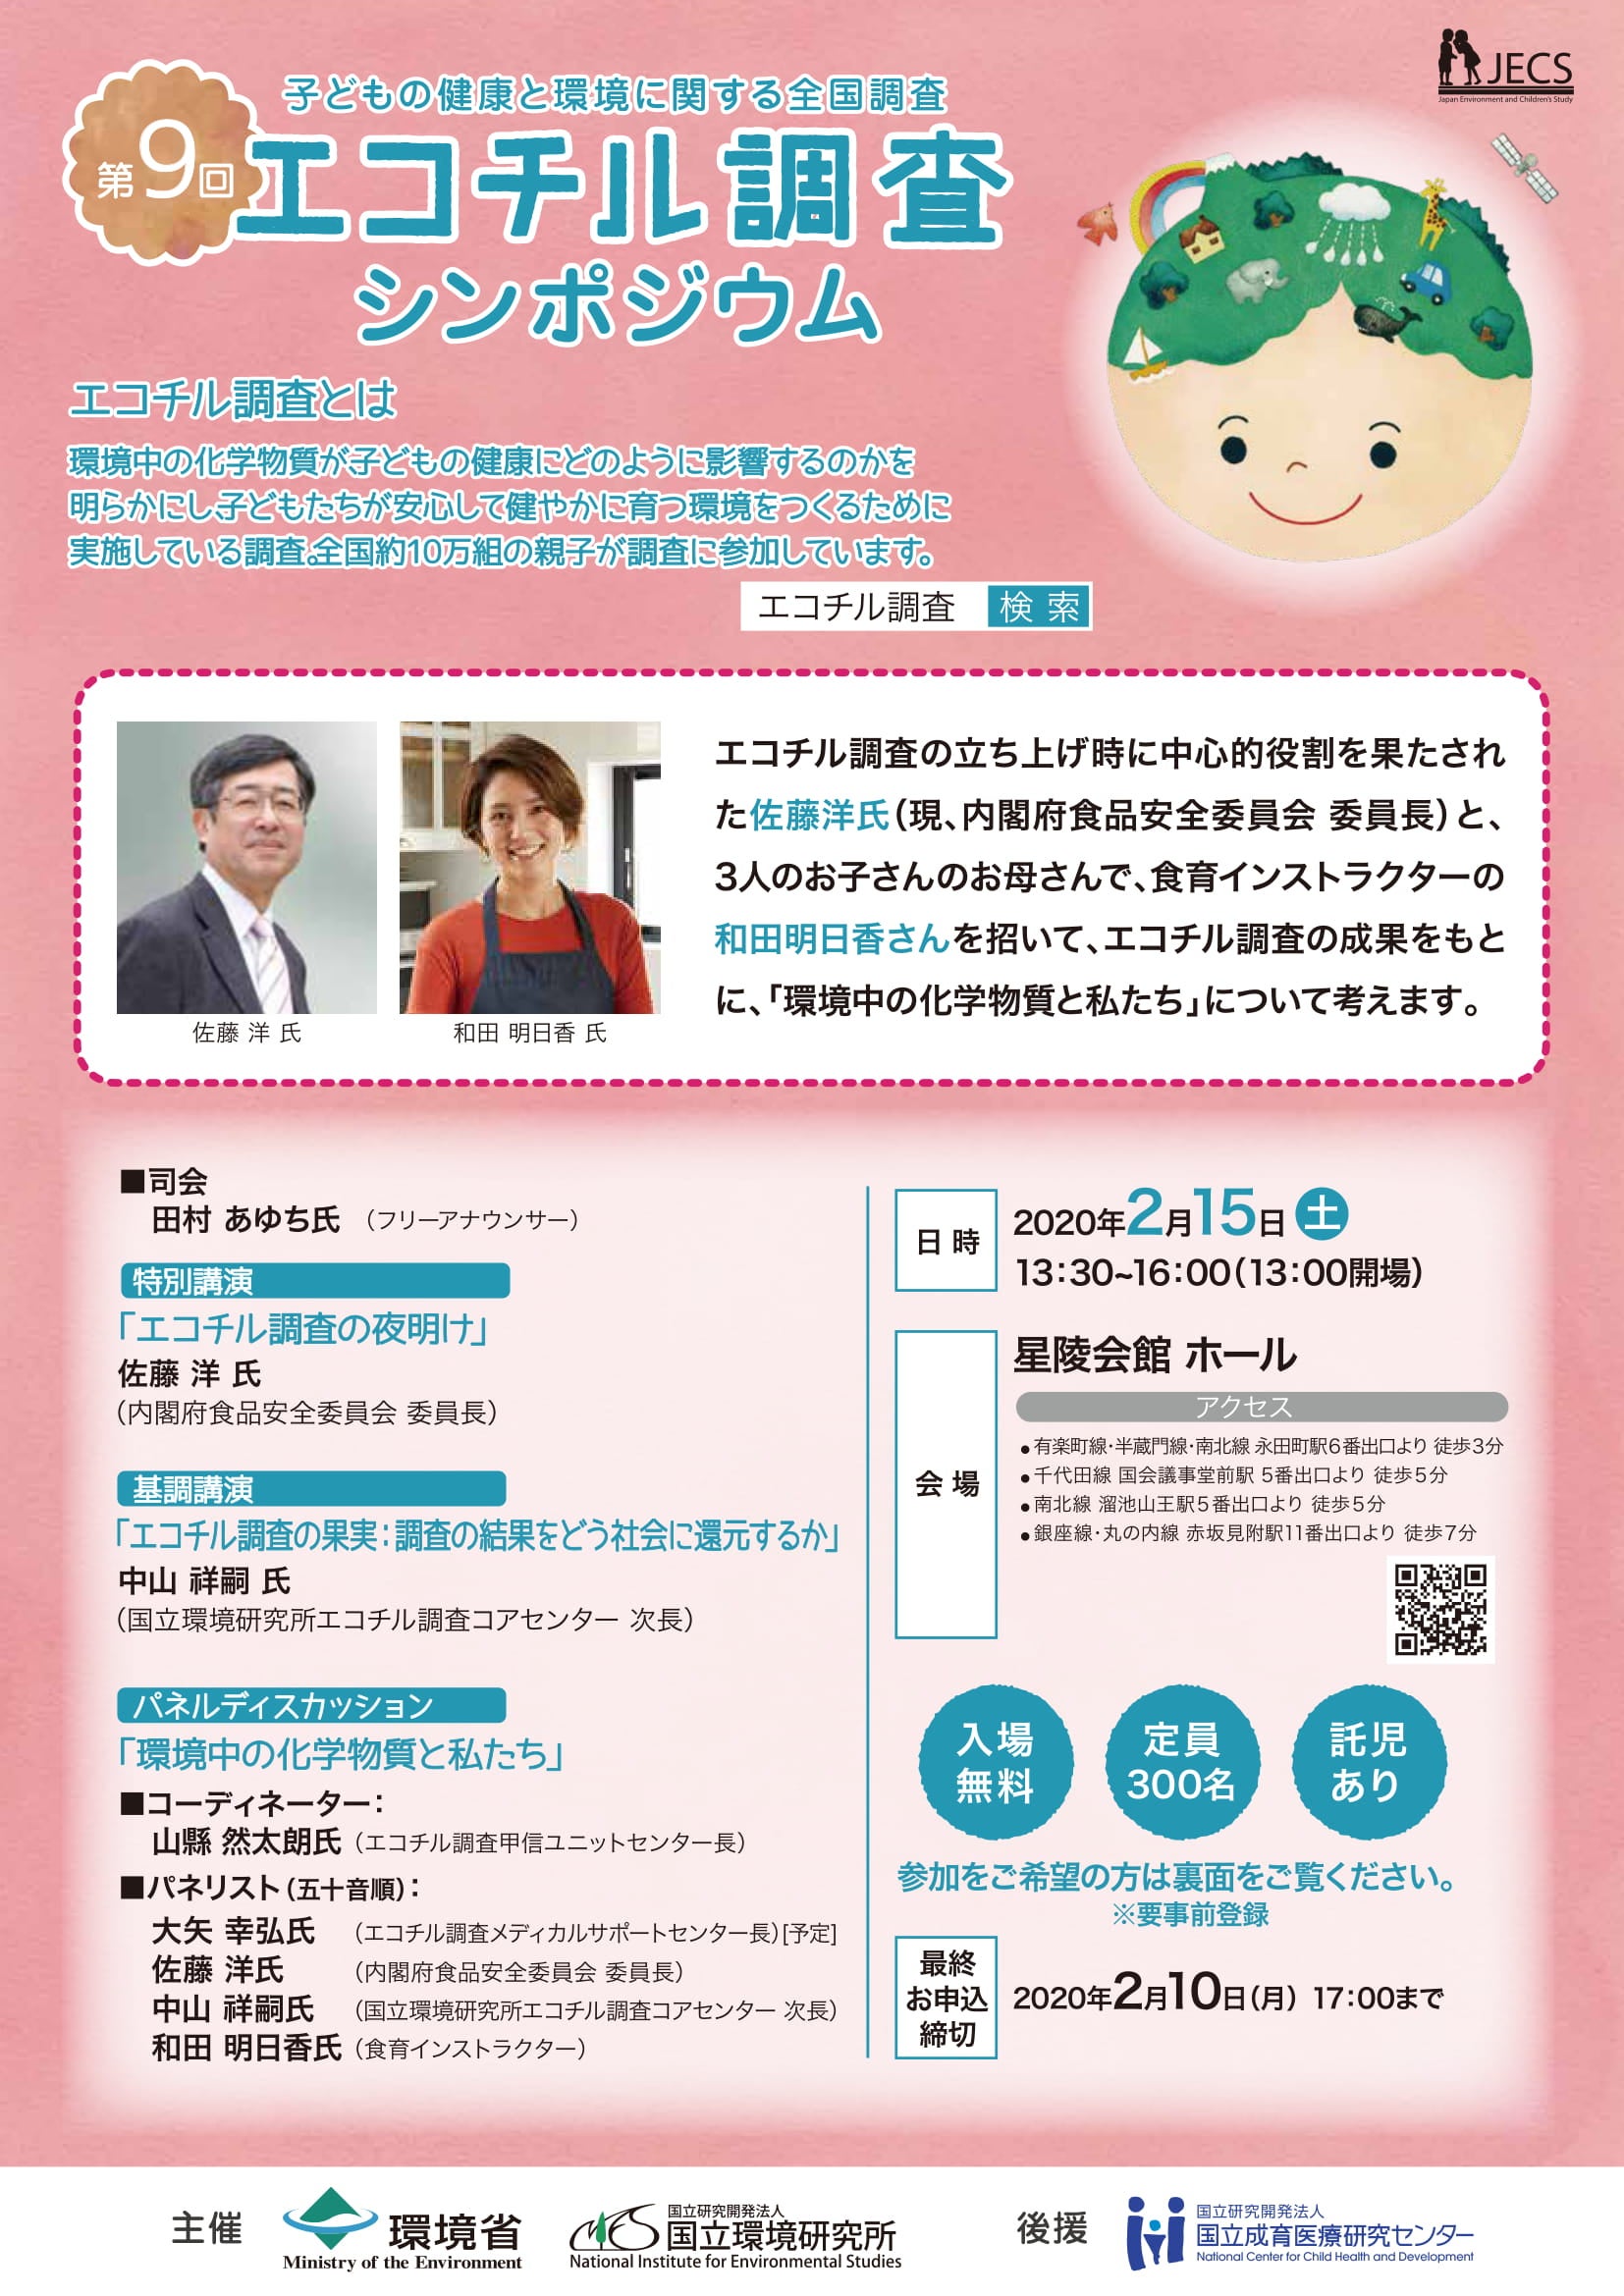 田村あゆちオフィシャルブログ Powered by Ameba『第9回 エコチル調査シンポジウム』で司会